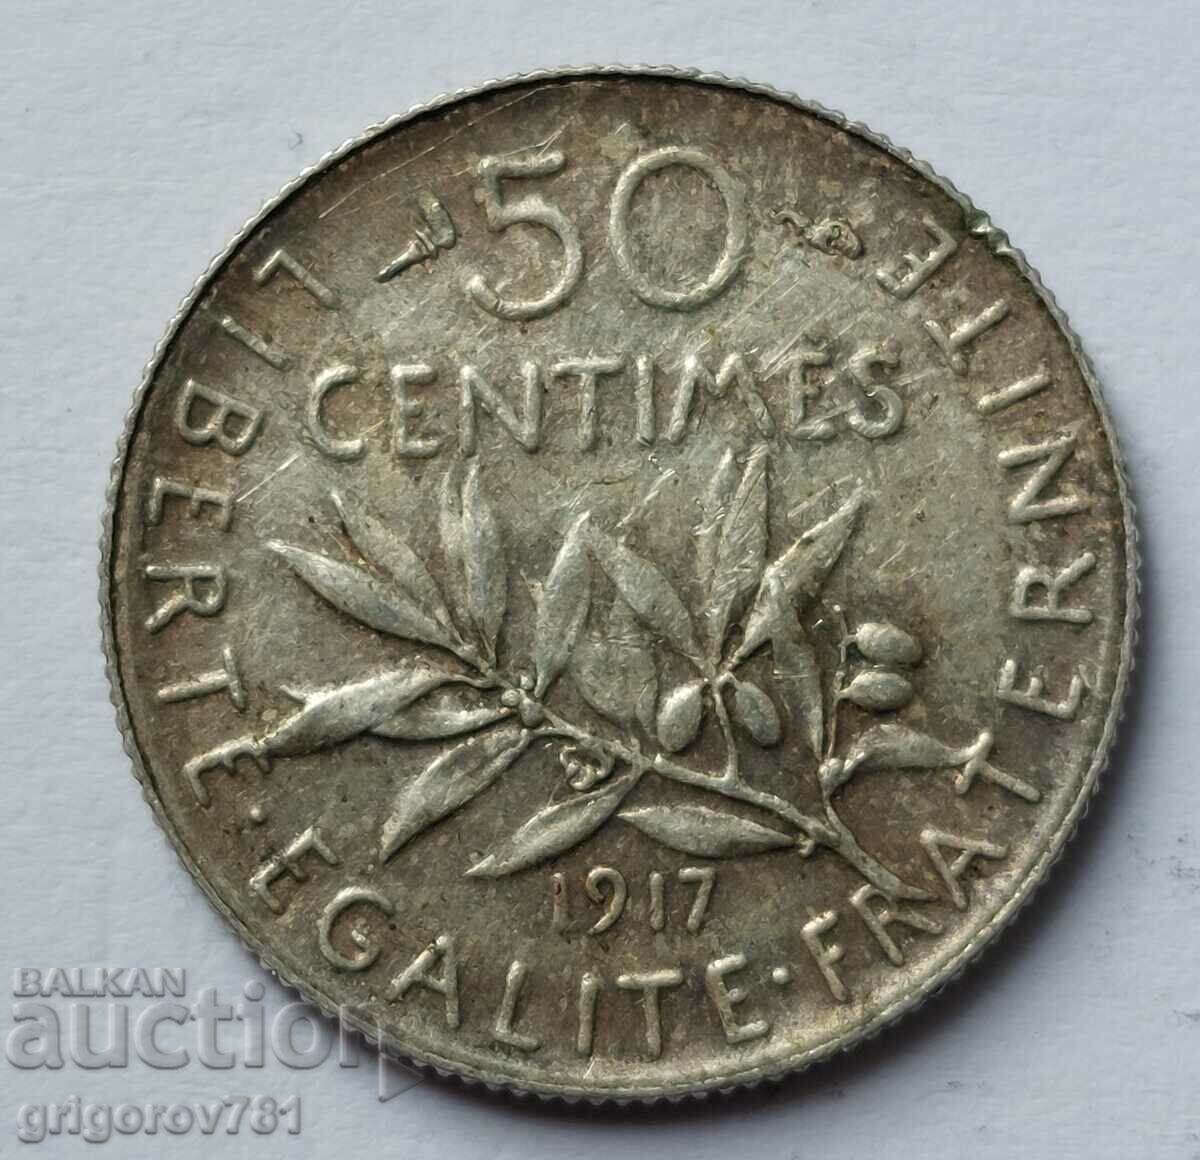 Ασημένιο 50 εκατοστά Γαλλία 1917 - ασημένιο νόμισμα №19